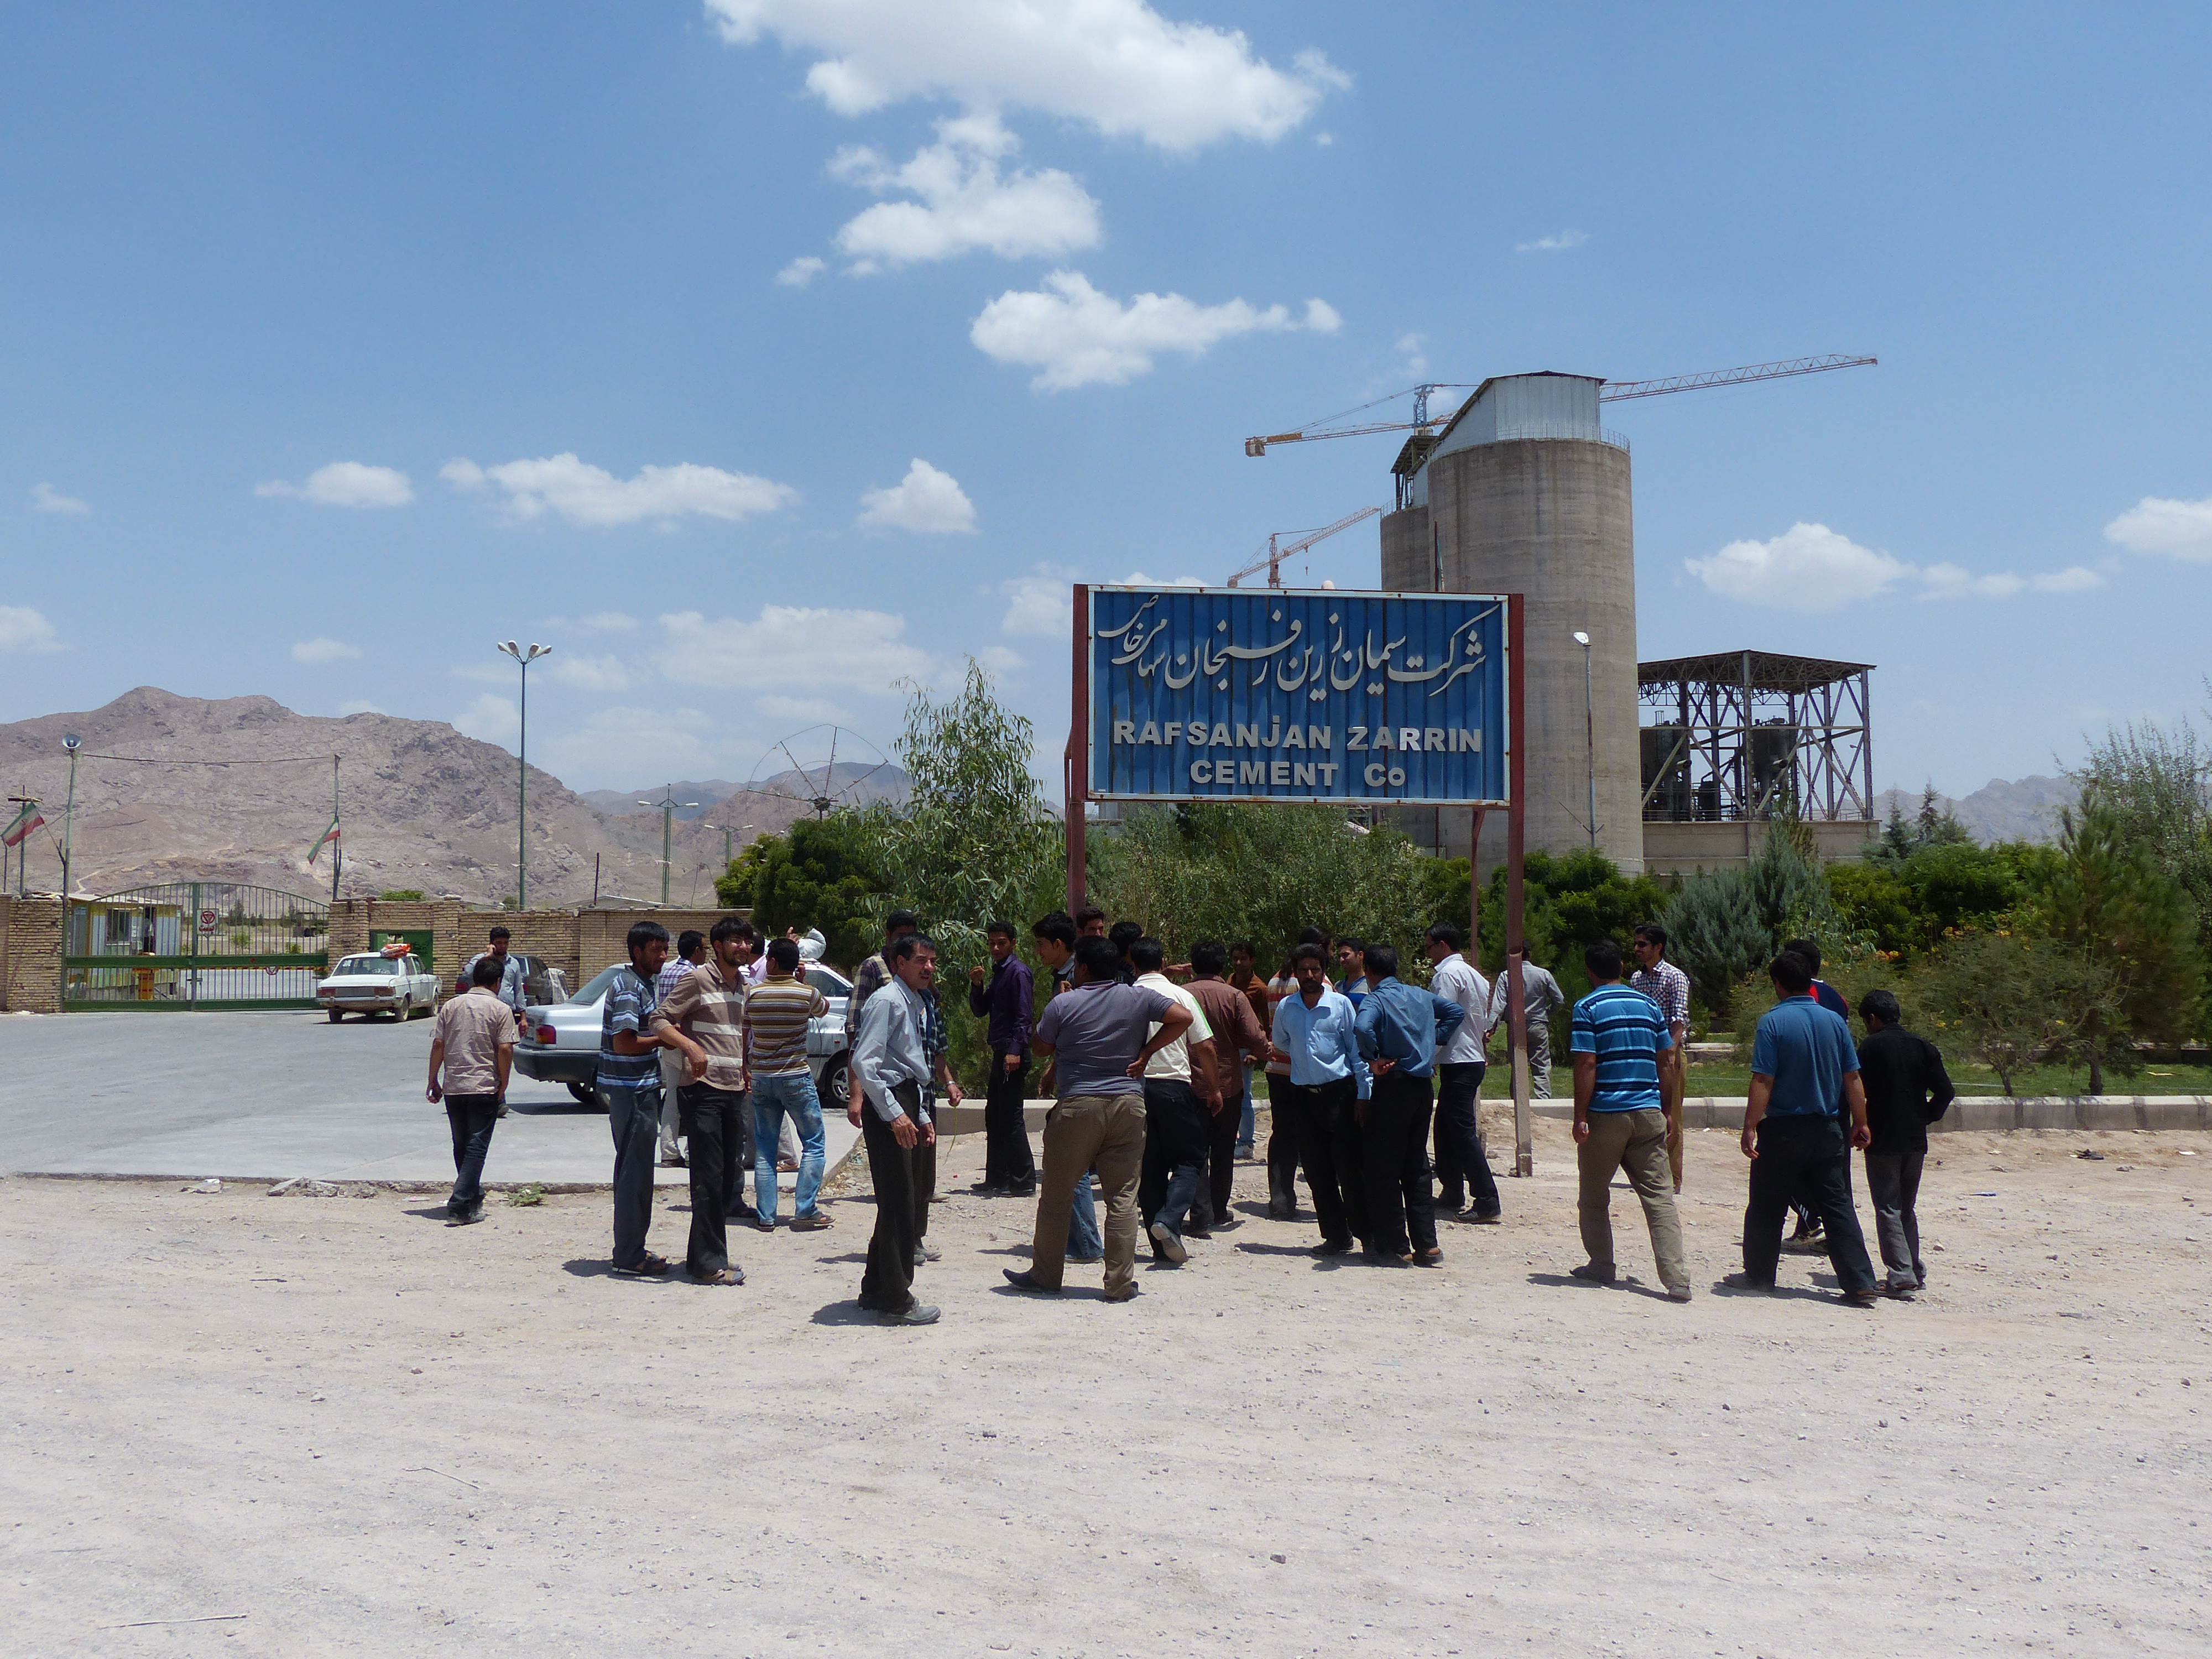 بی توجهی و مسئولین استان و شهرستان رفسنجان بازهم کارگران شرکت سیمان زرین را مجبور به اعتصاب کرد.